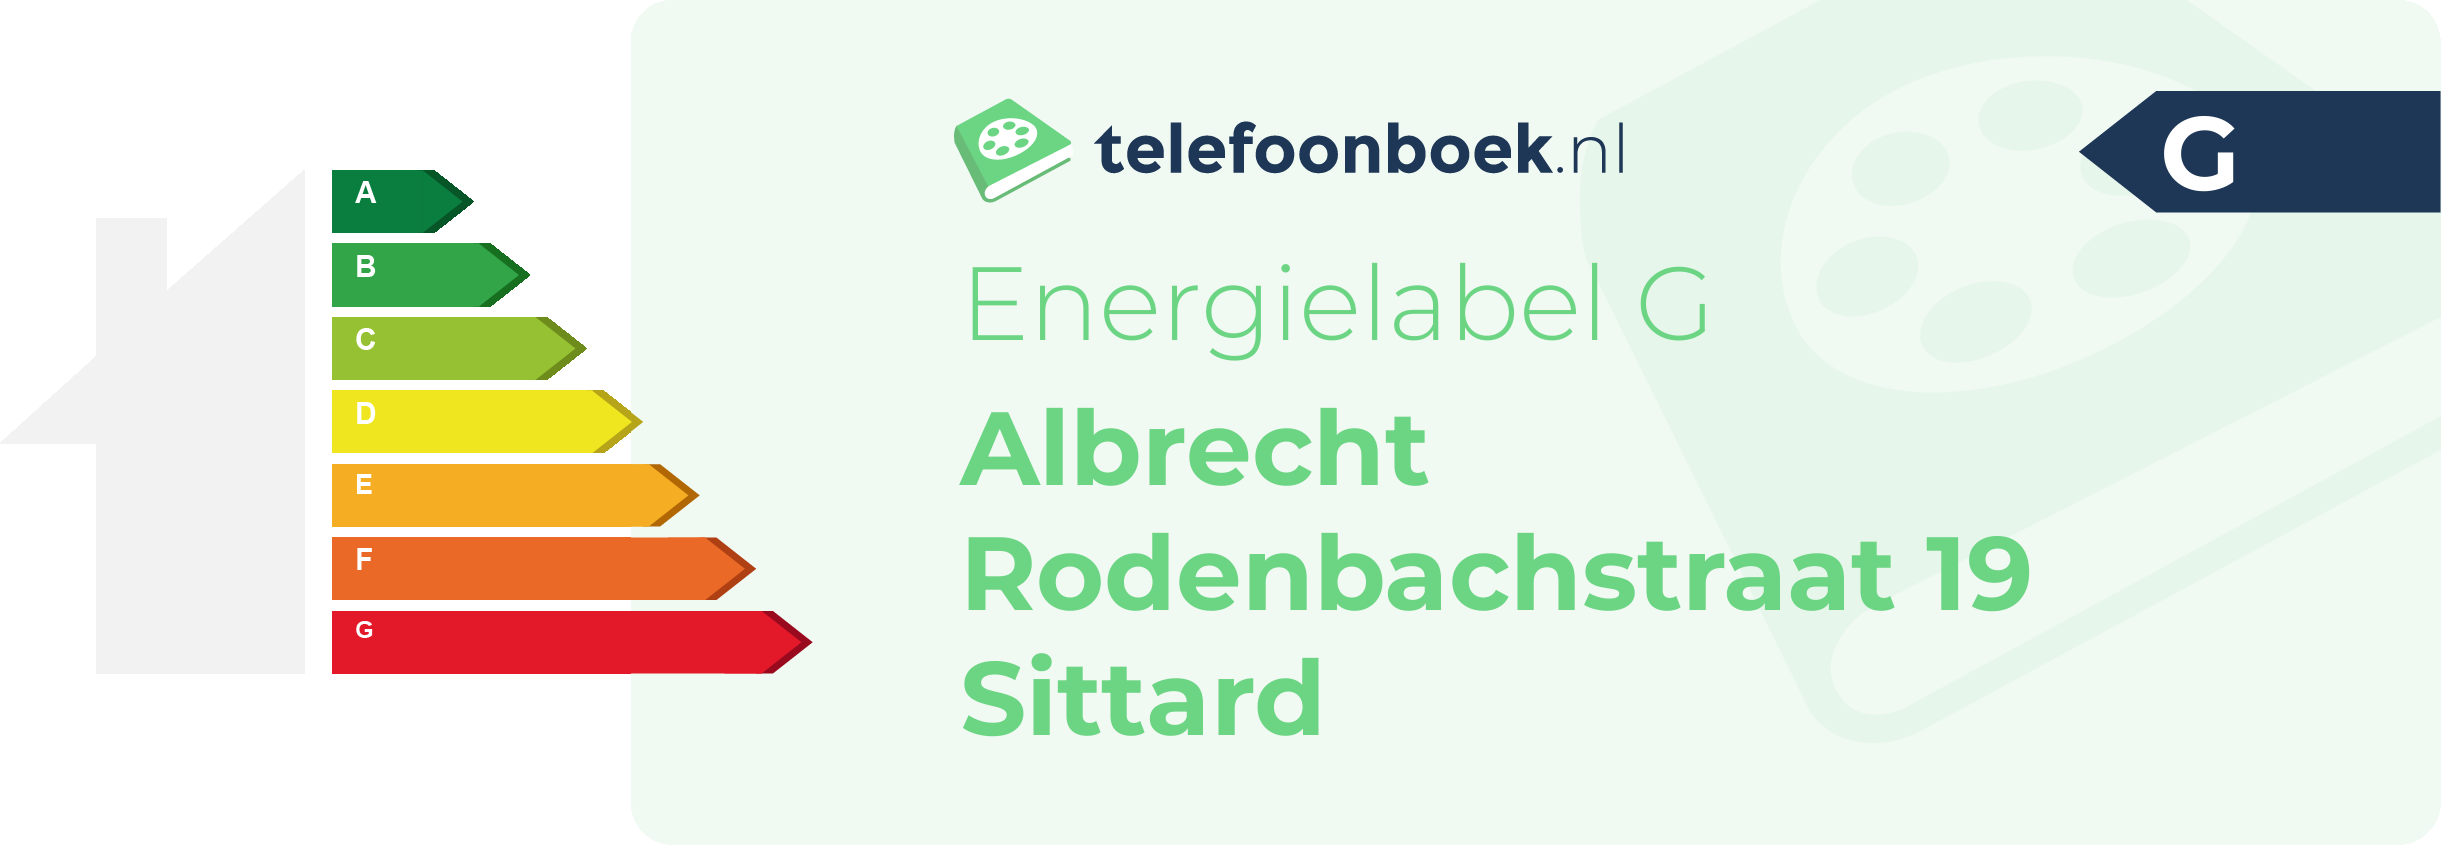 Energielabel Albrecht Rodenbachstraat 19 Sittard